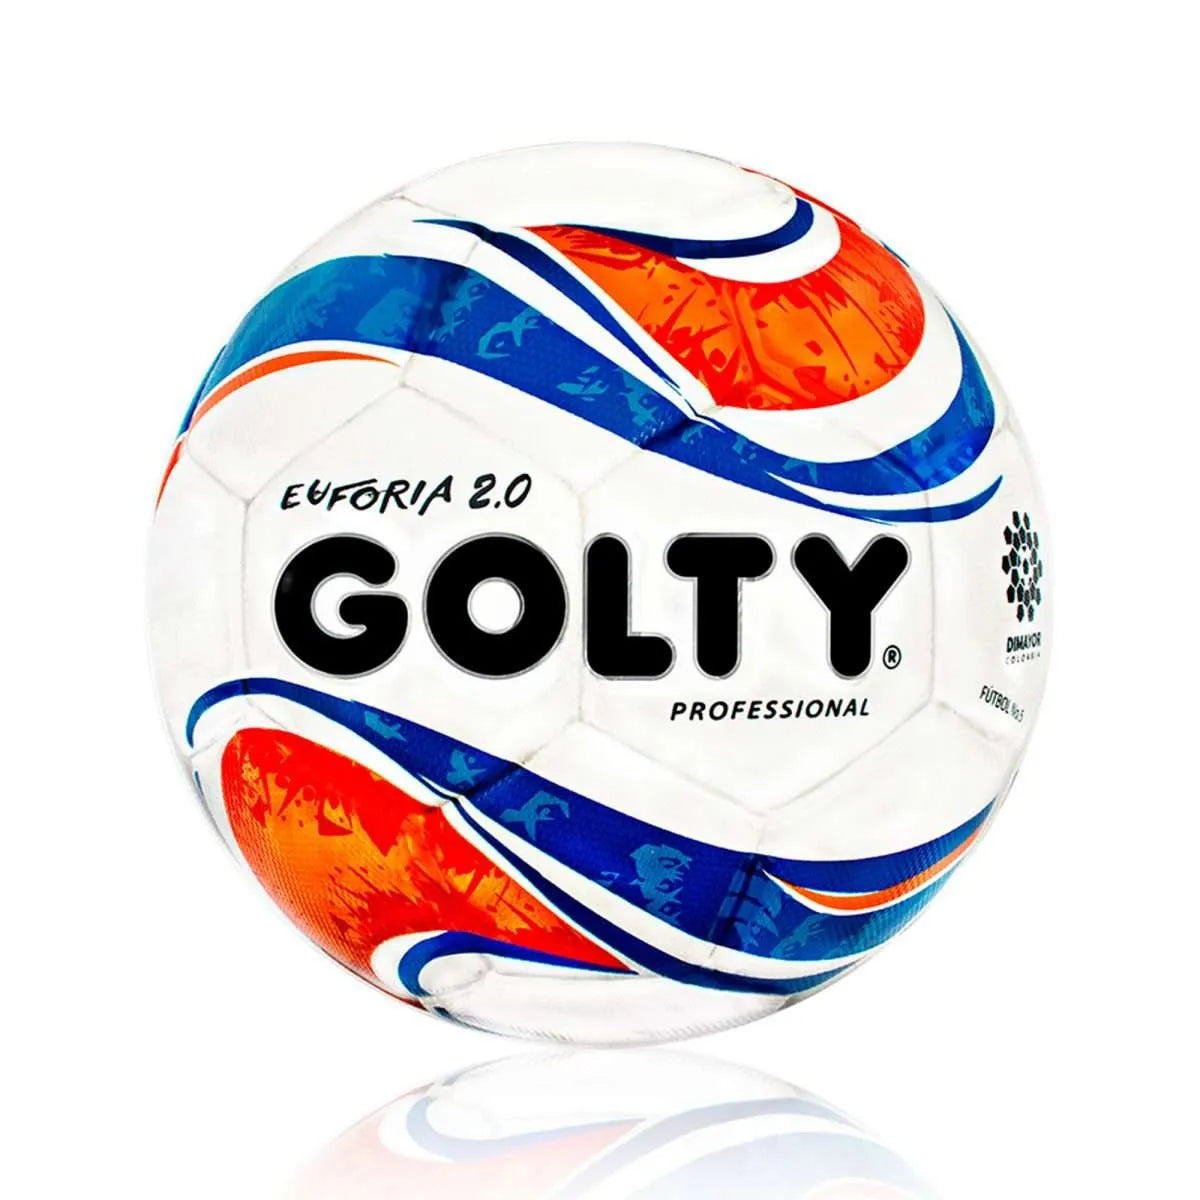 Balón De Fútbol GOLTY PRO EUFORIA 2.0 #5